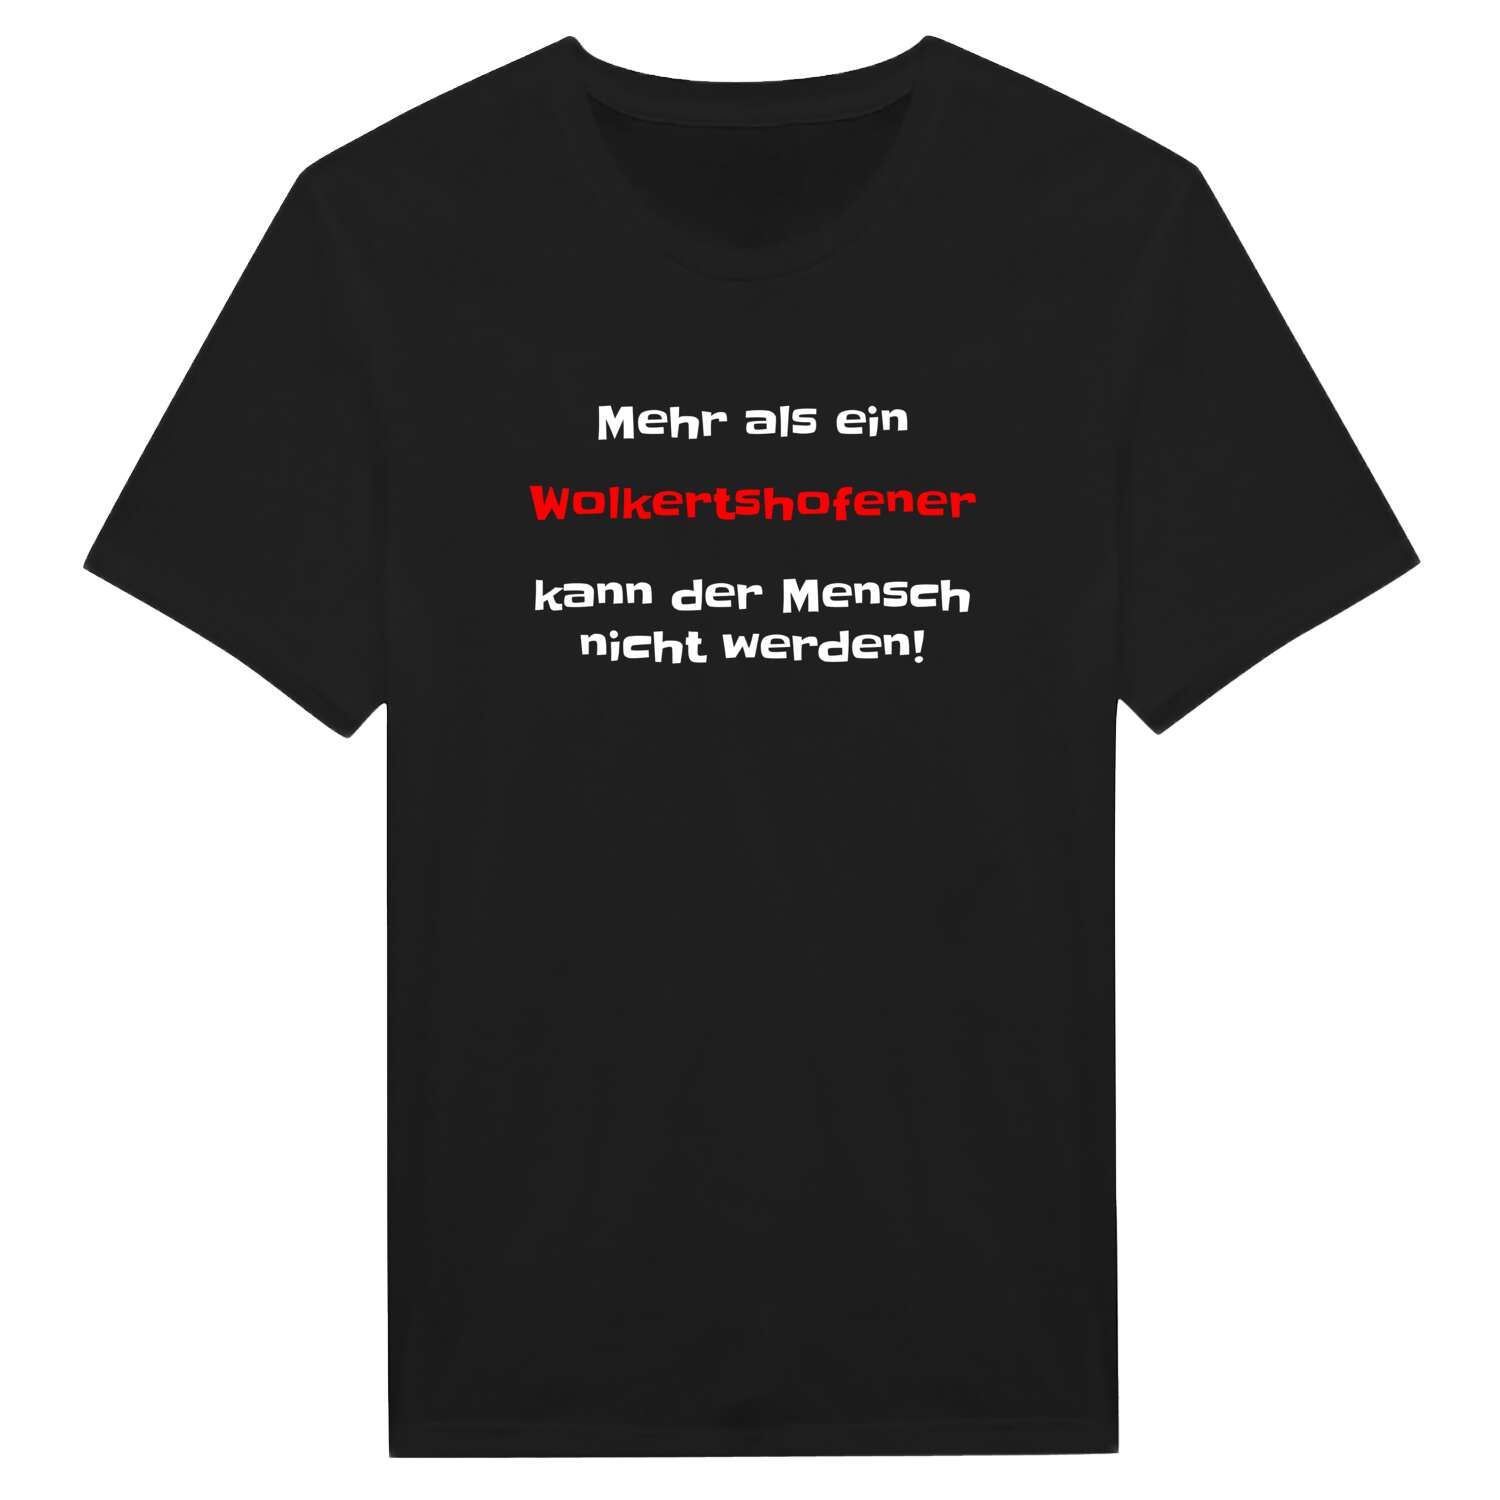 Wolkertshofen T-Shirt »Mehr als ein«